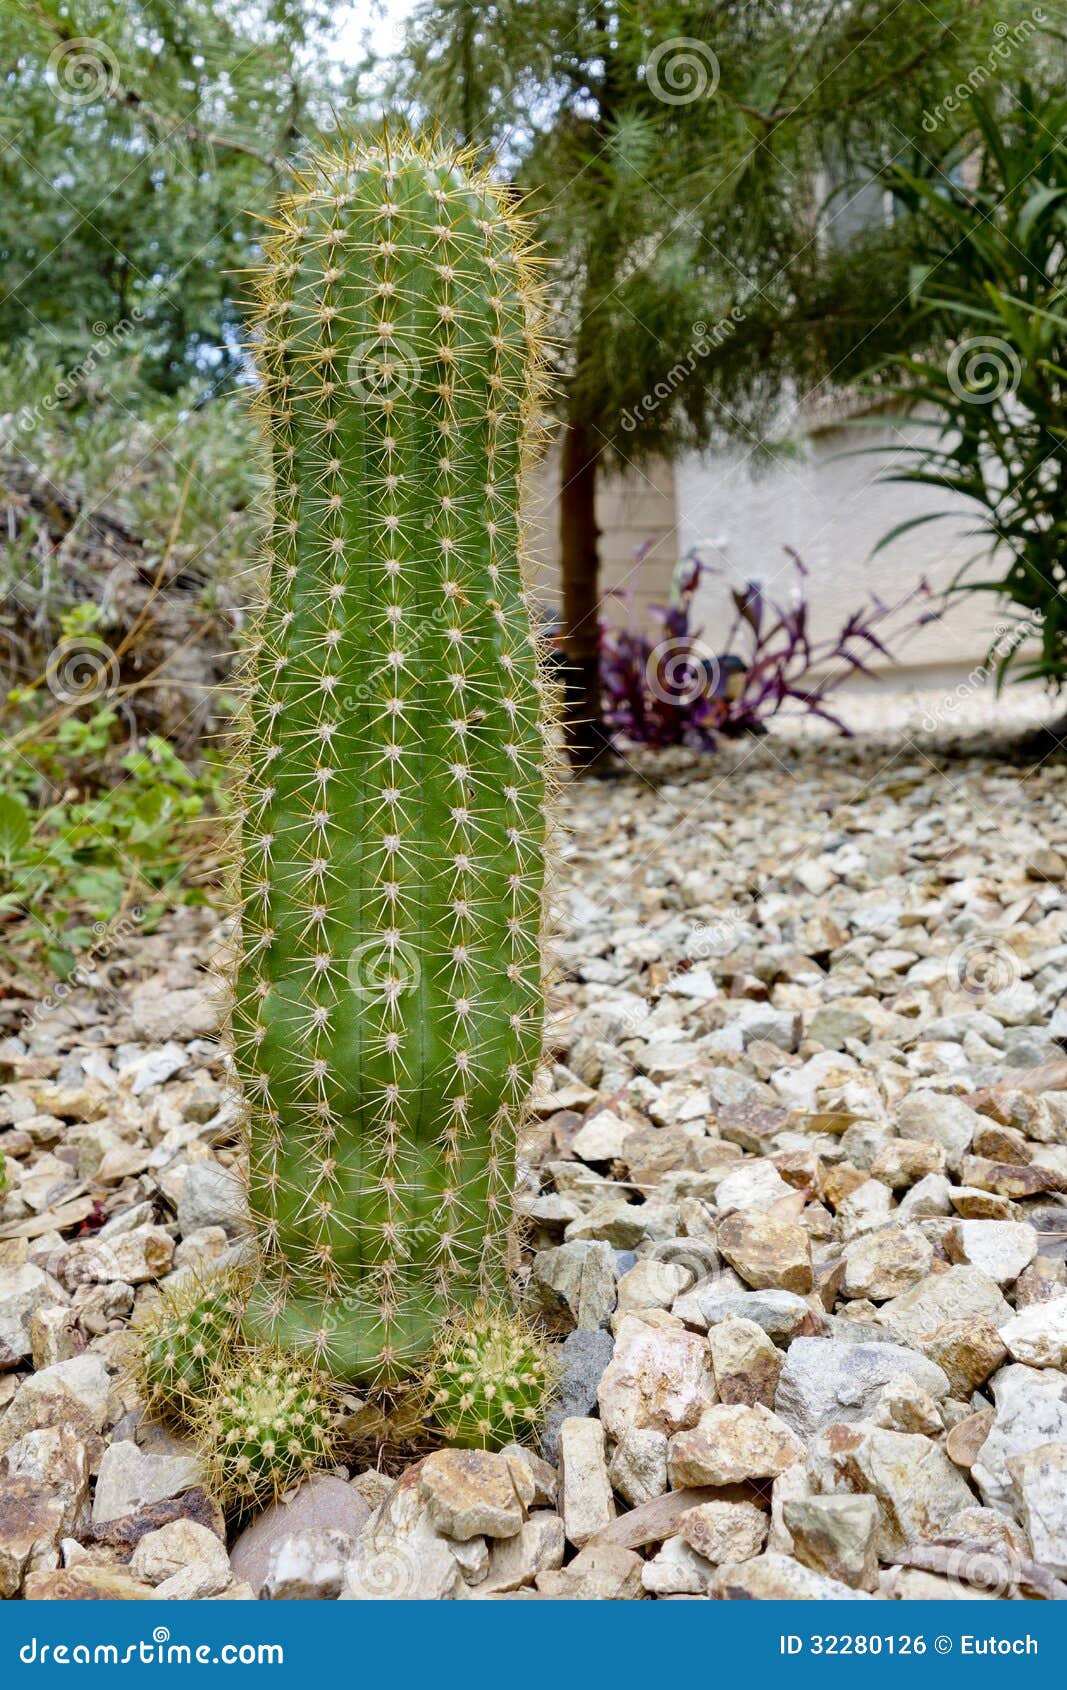 trichocereus grandiflorus cactus